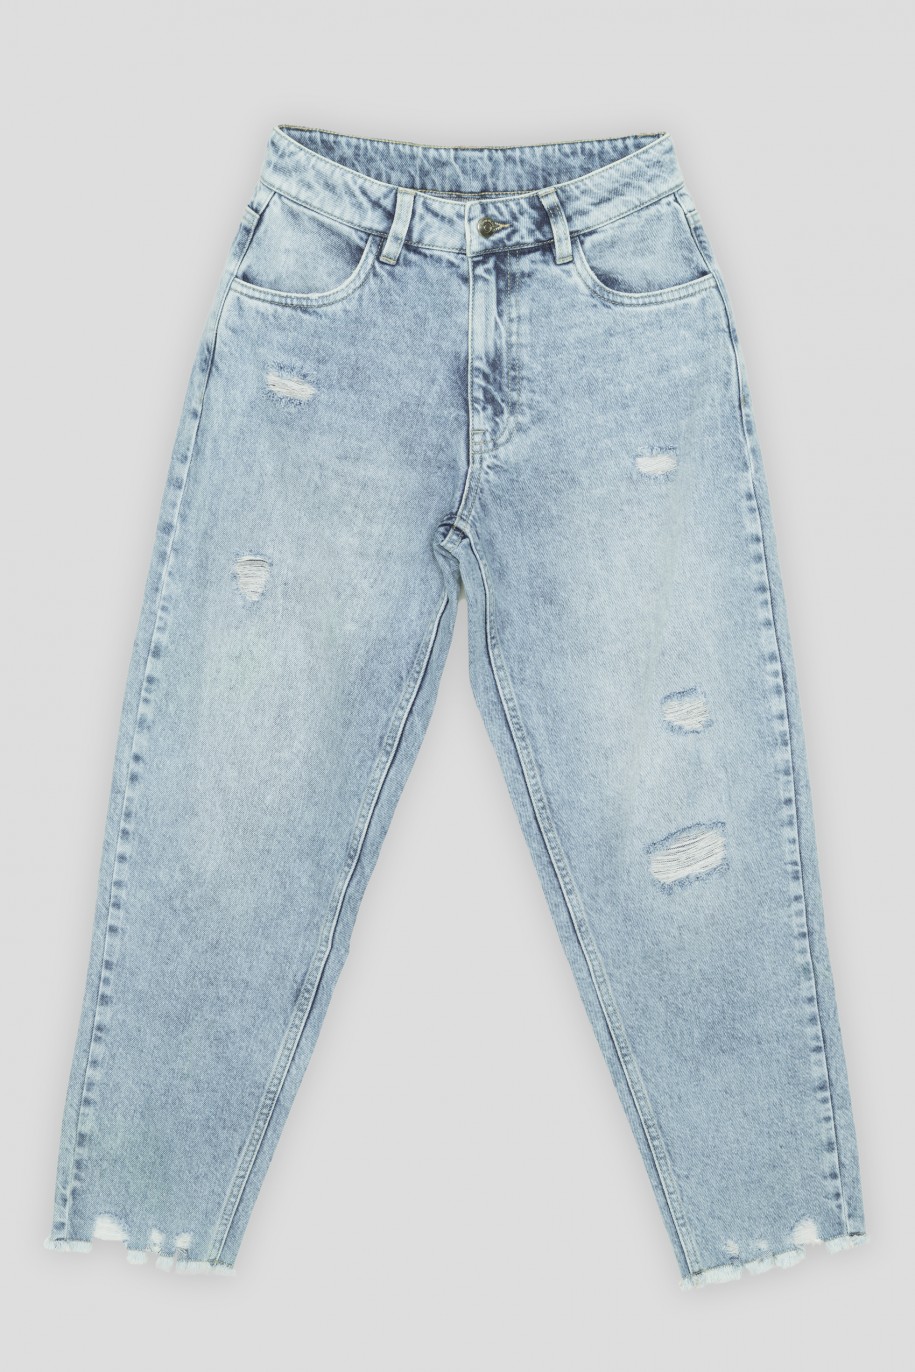 Jasnoniebieskie jeansy z przetarciami - 35674